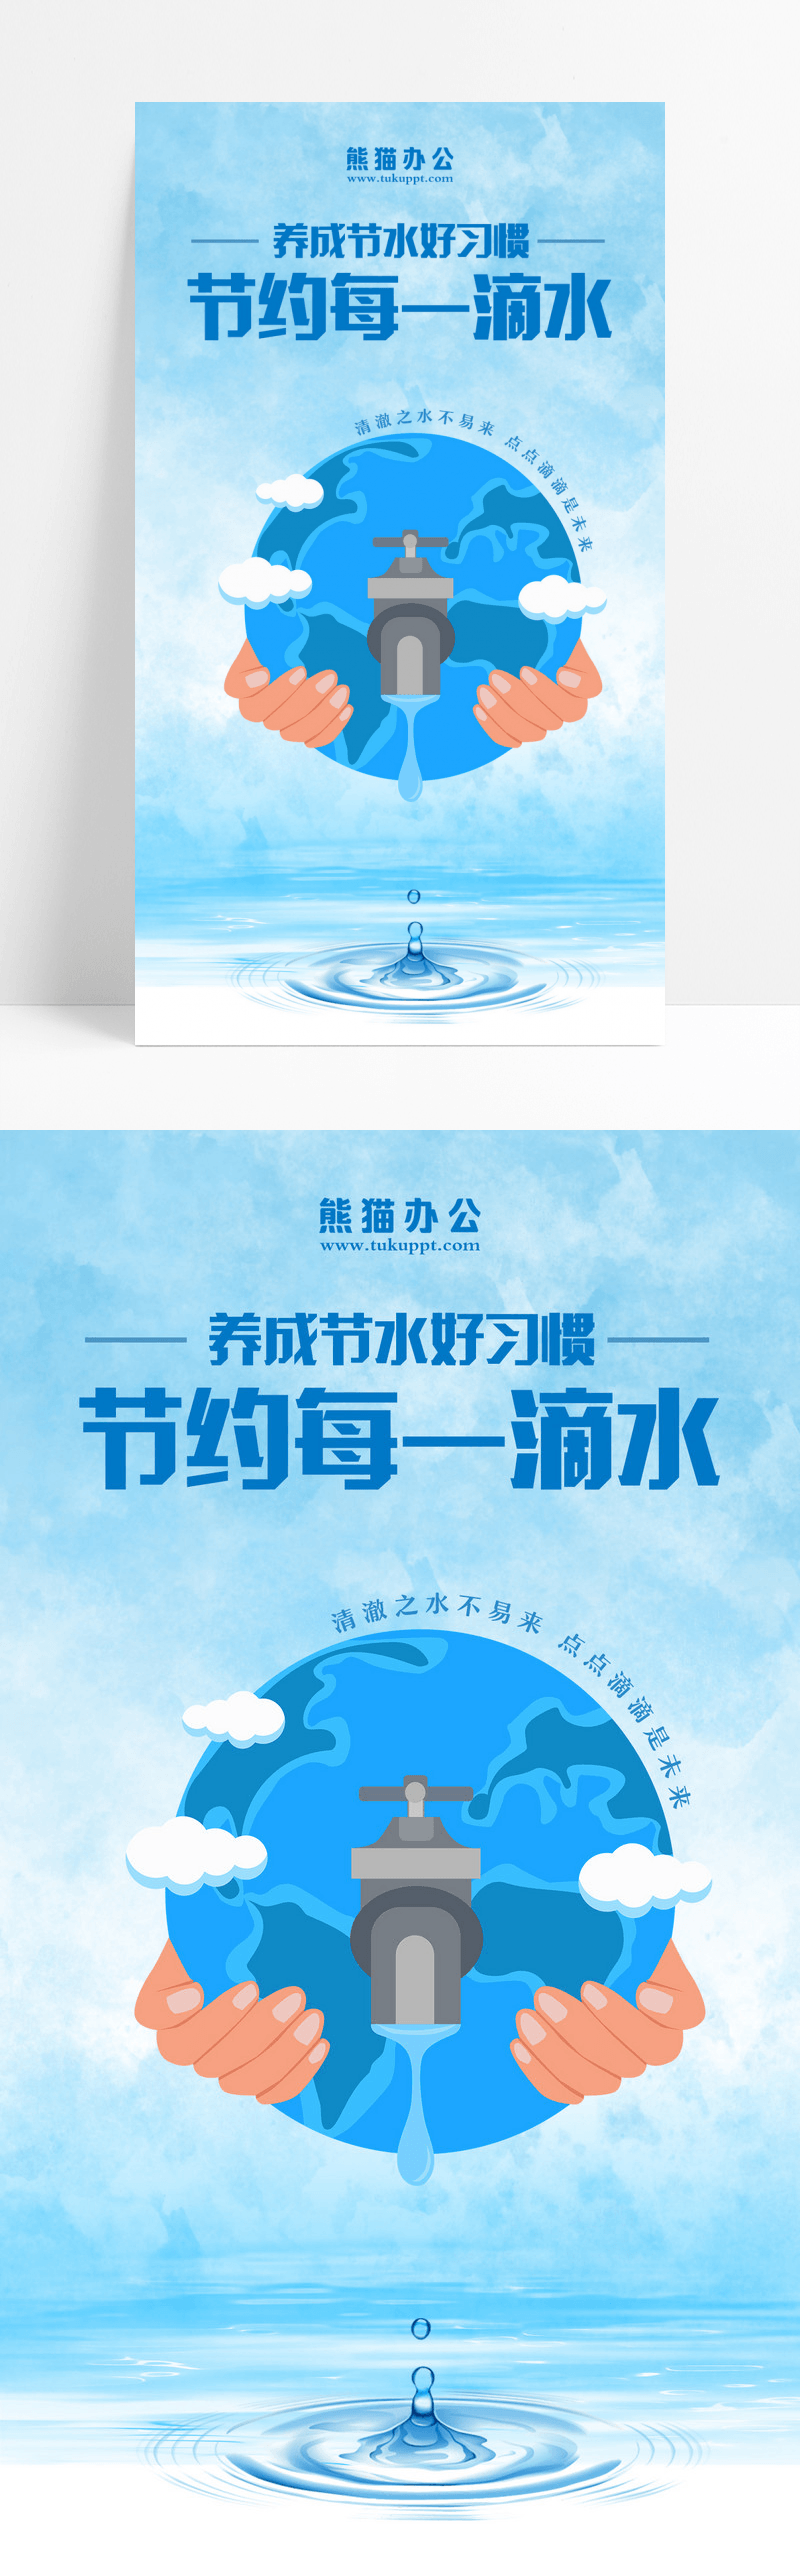 蓝色简约创意水滴节约用水手机宣传海报设计